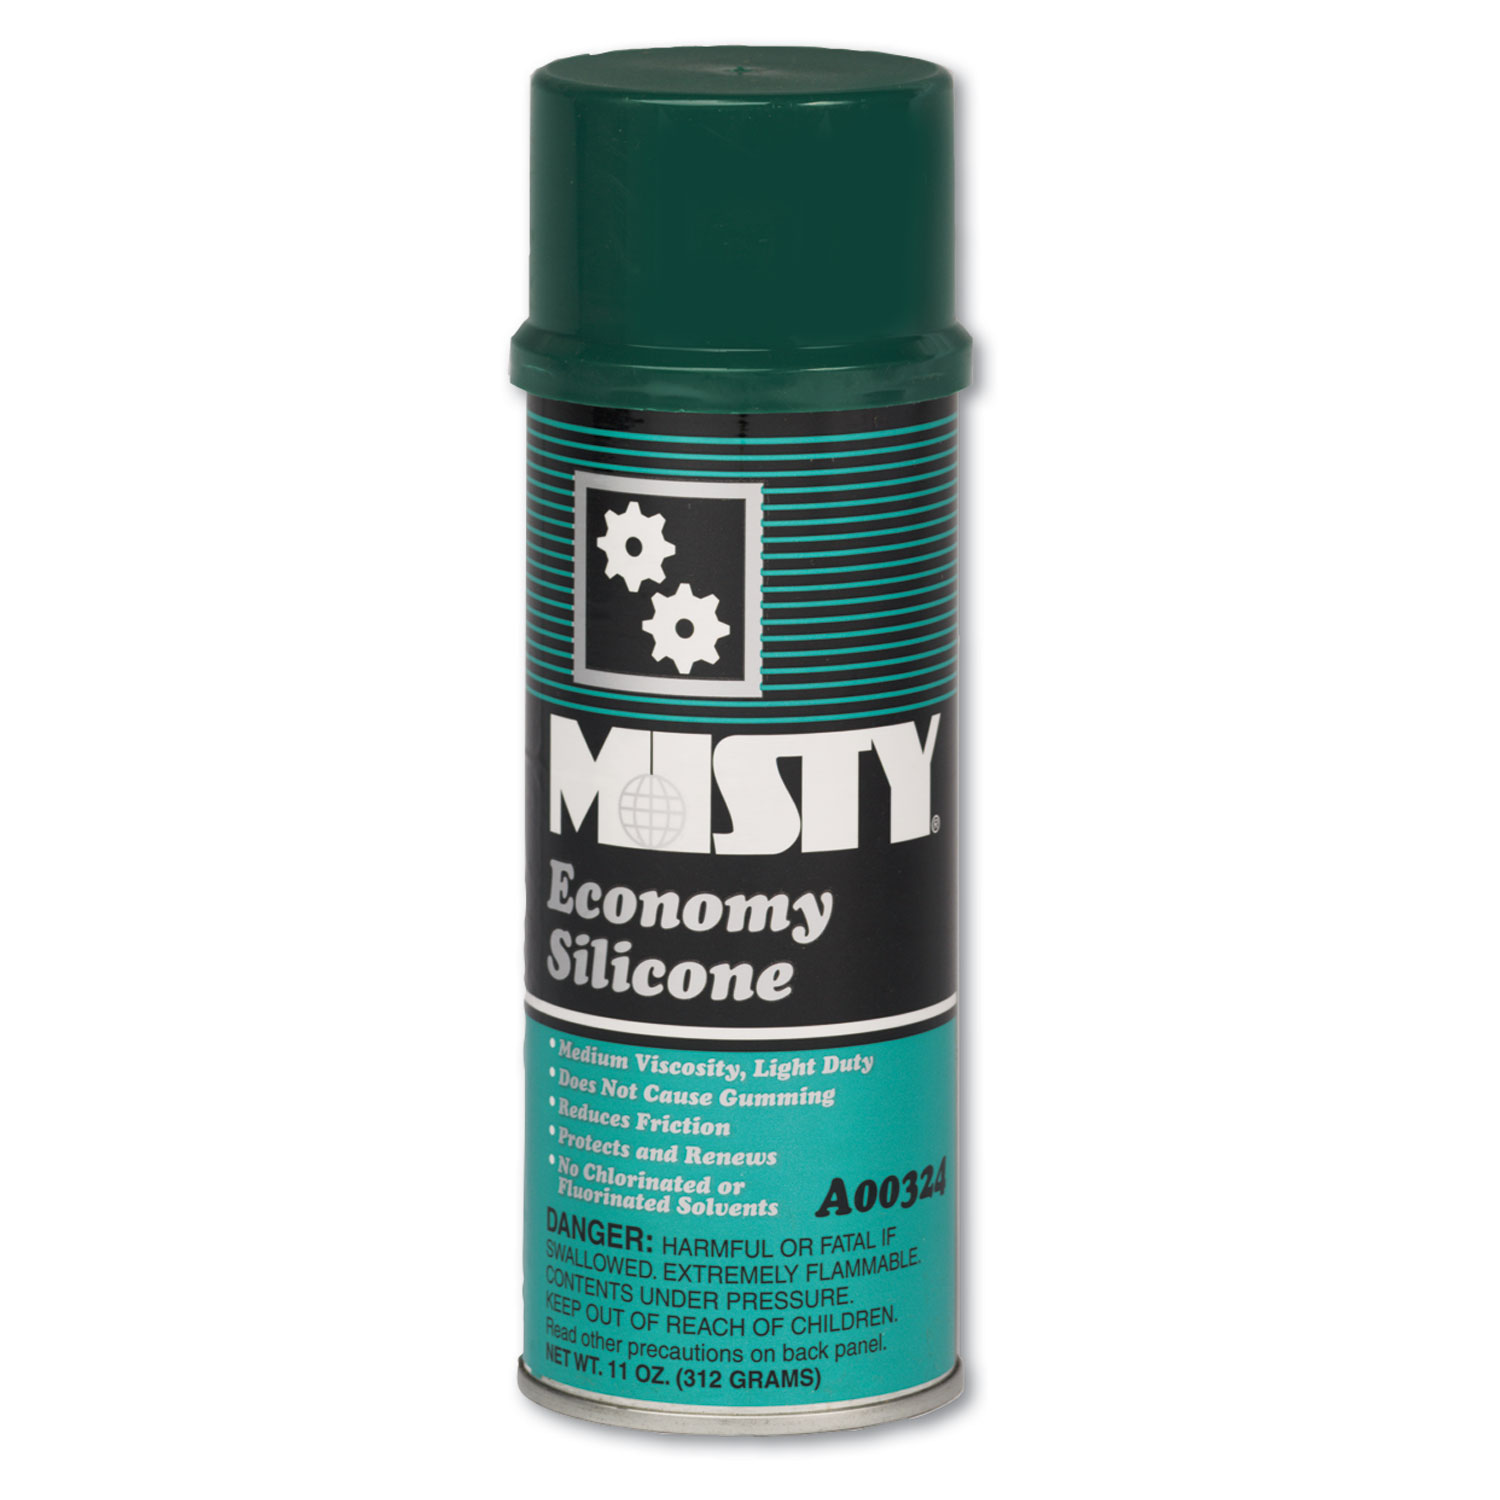  Misty 1002077 Economy Silicone Spray Lubricant, Aerosol Can, 11oz, 12/Carton (AMR1002077) 